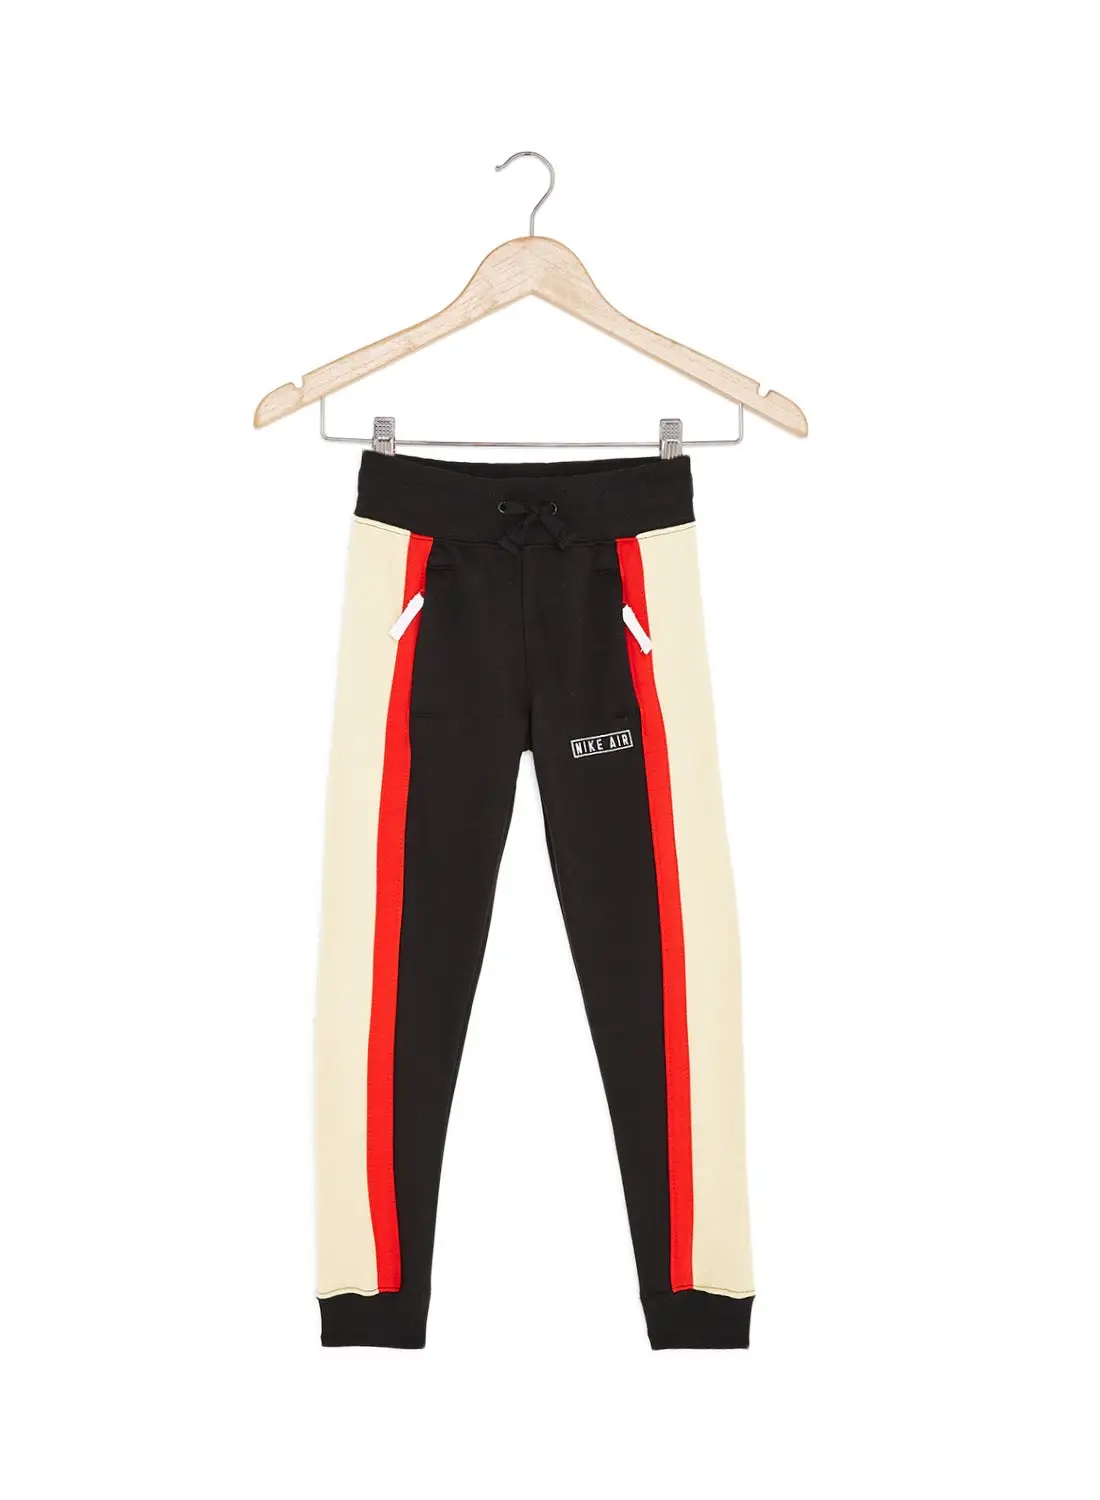 Nike Kids Air Sweatpants Black/Red/Beige